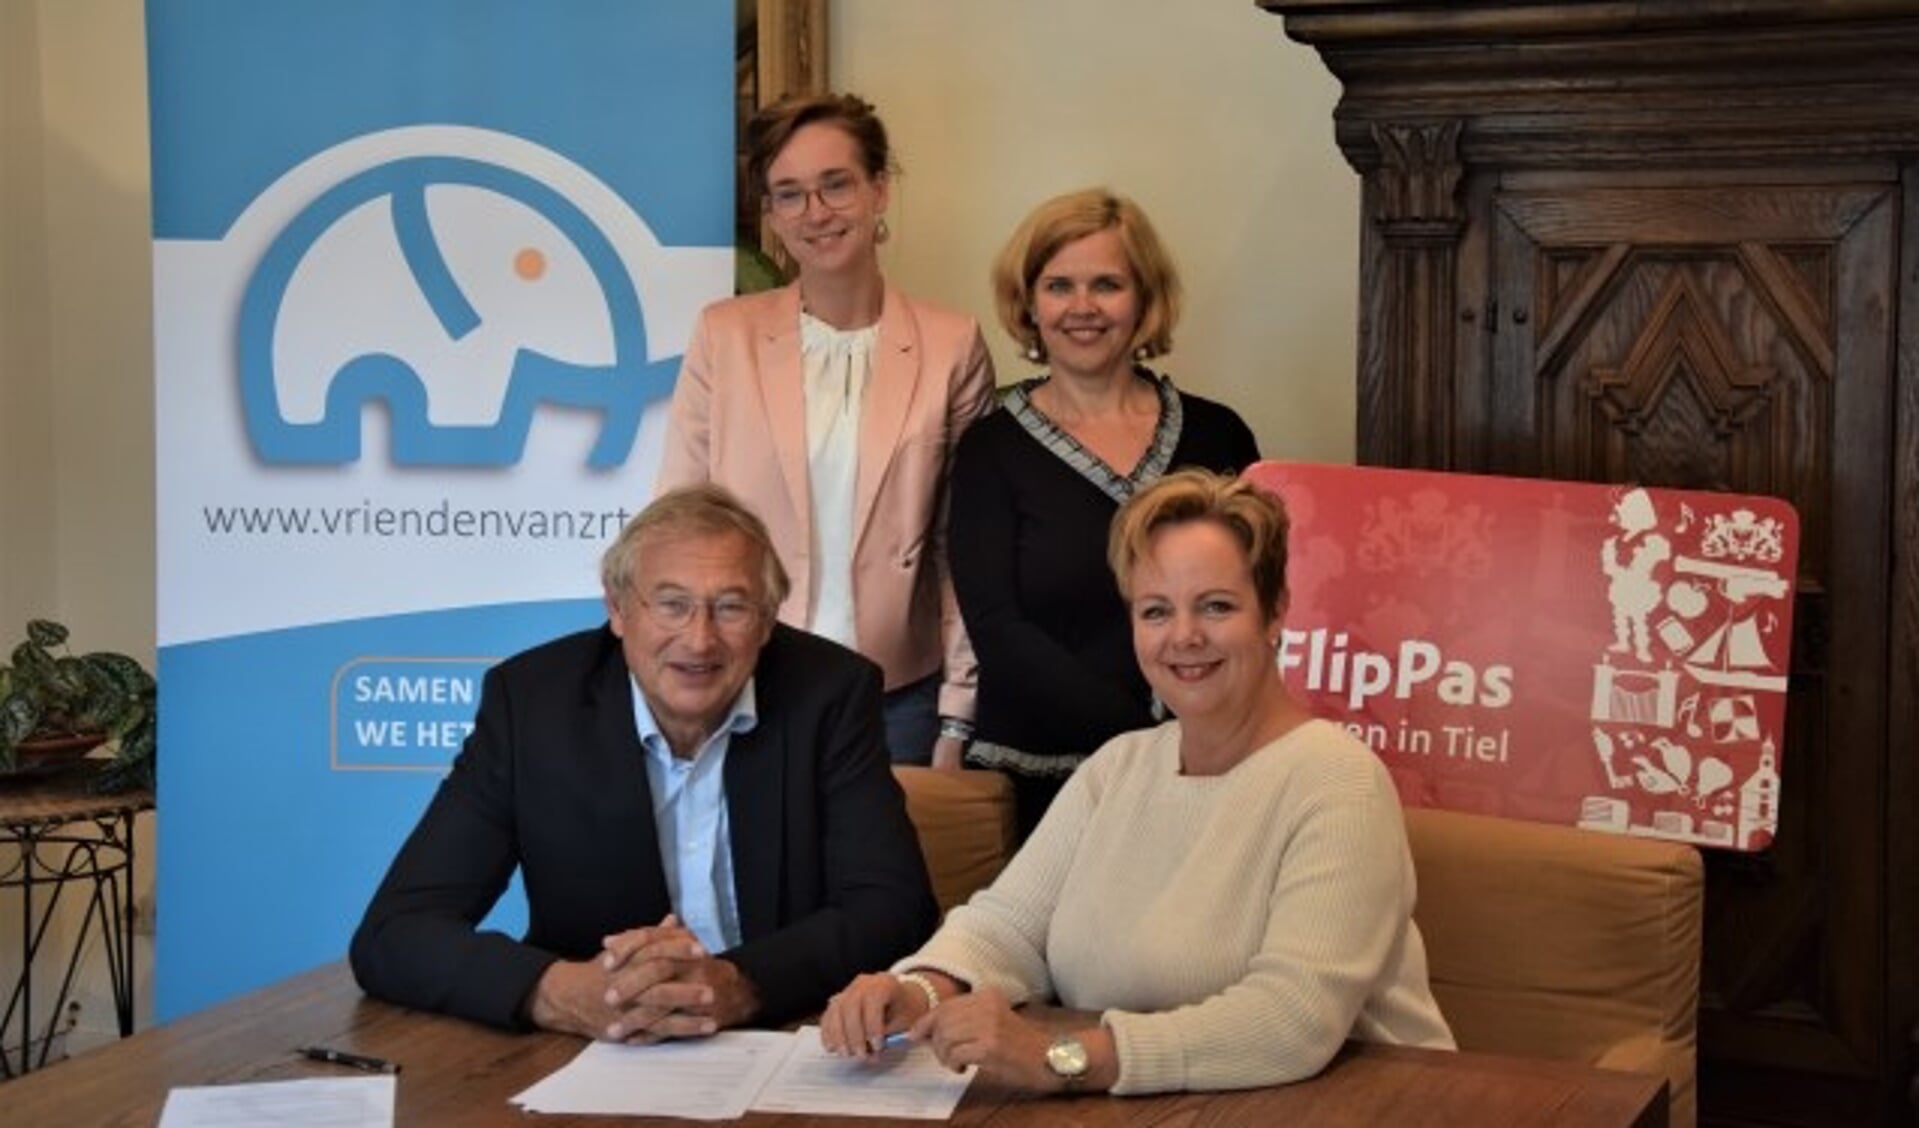 Onlangs is de samenwerking van Stichting Vrienden van Ziekenhuis Rivierenland met de FlipPas bekend gemaakt.